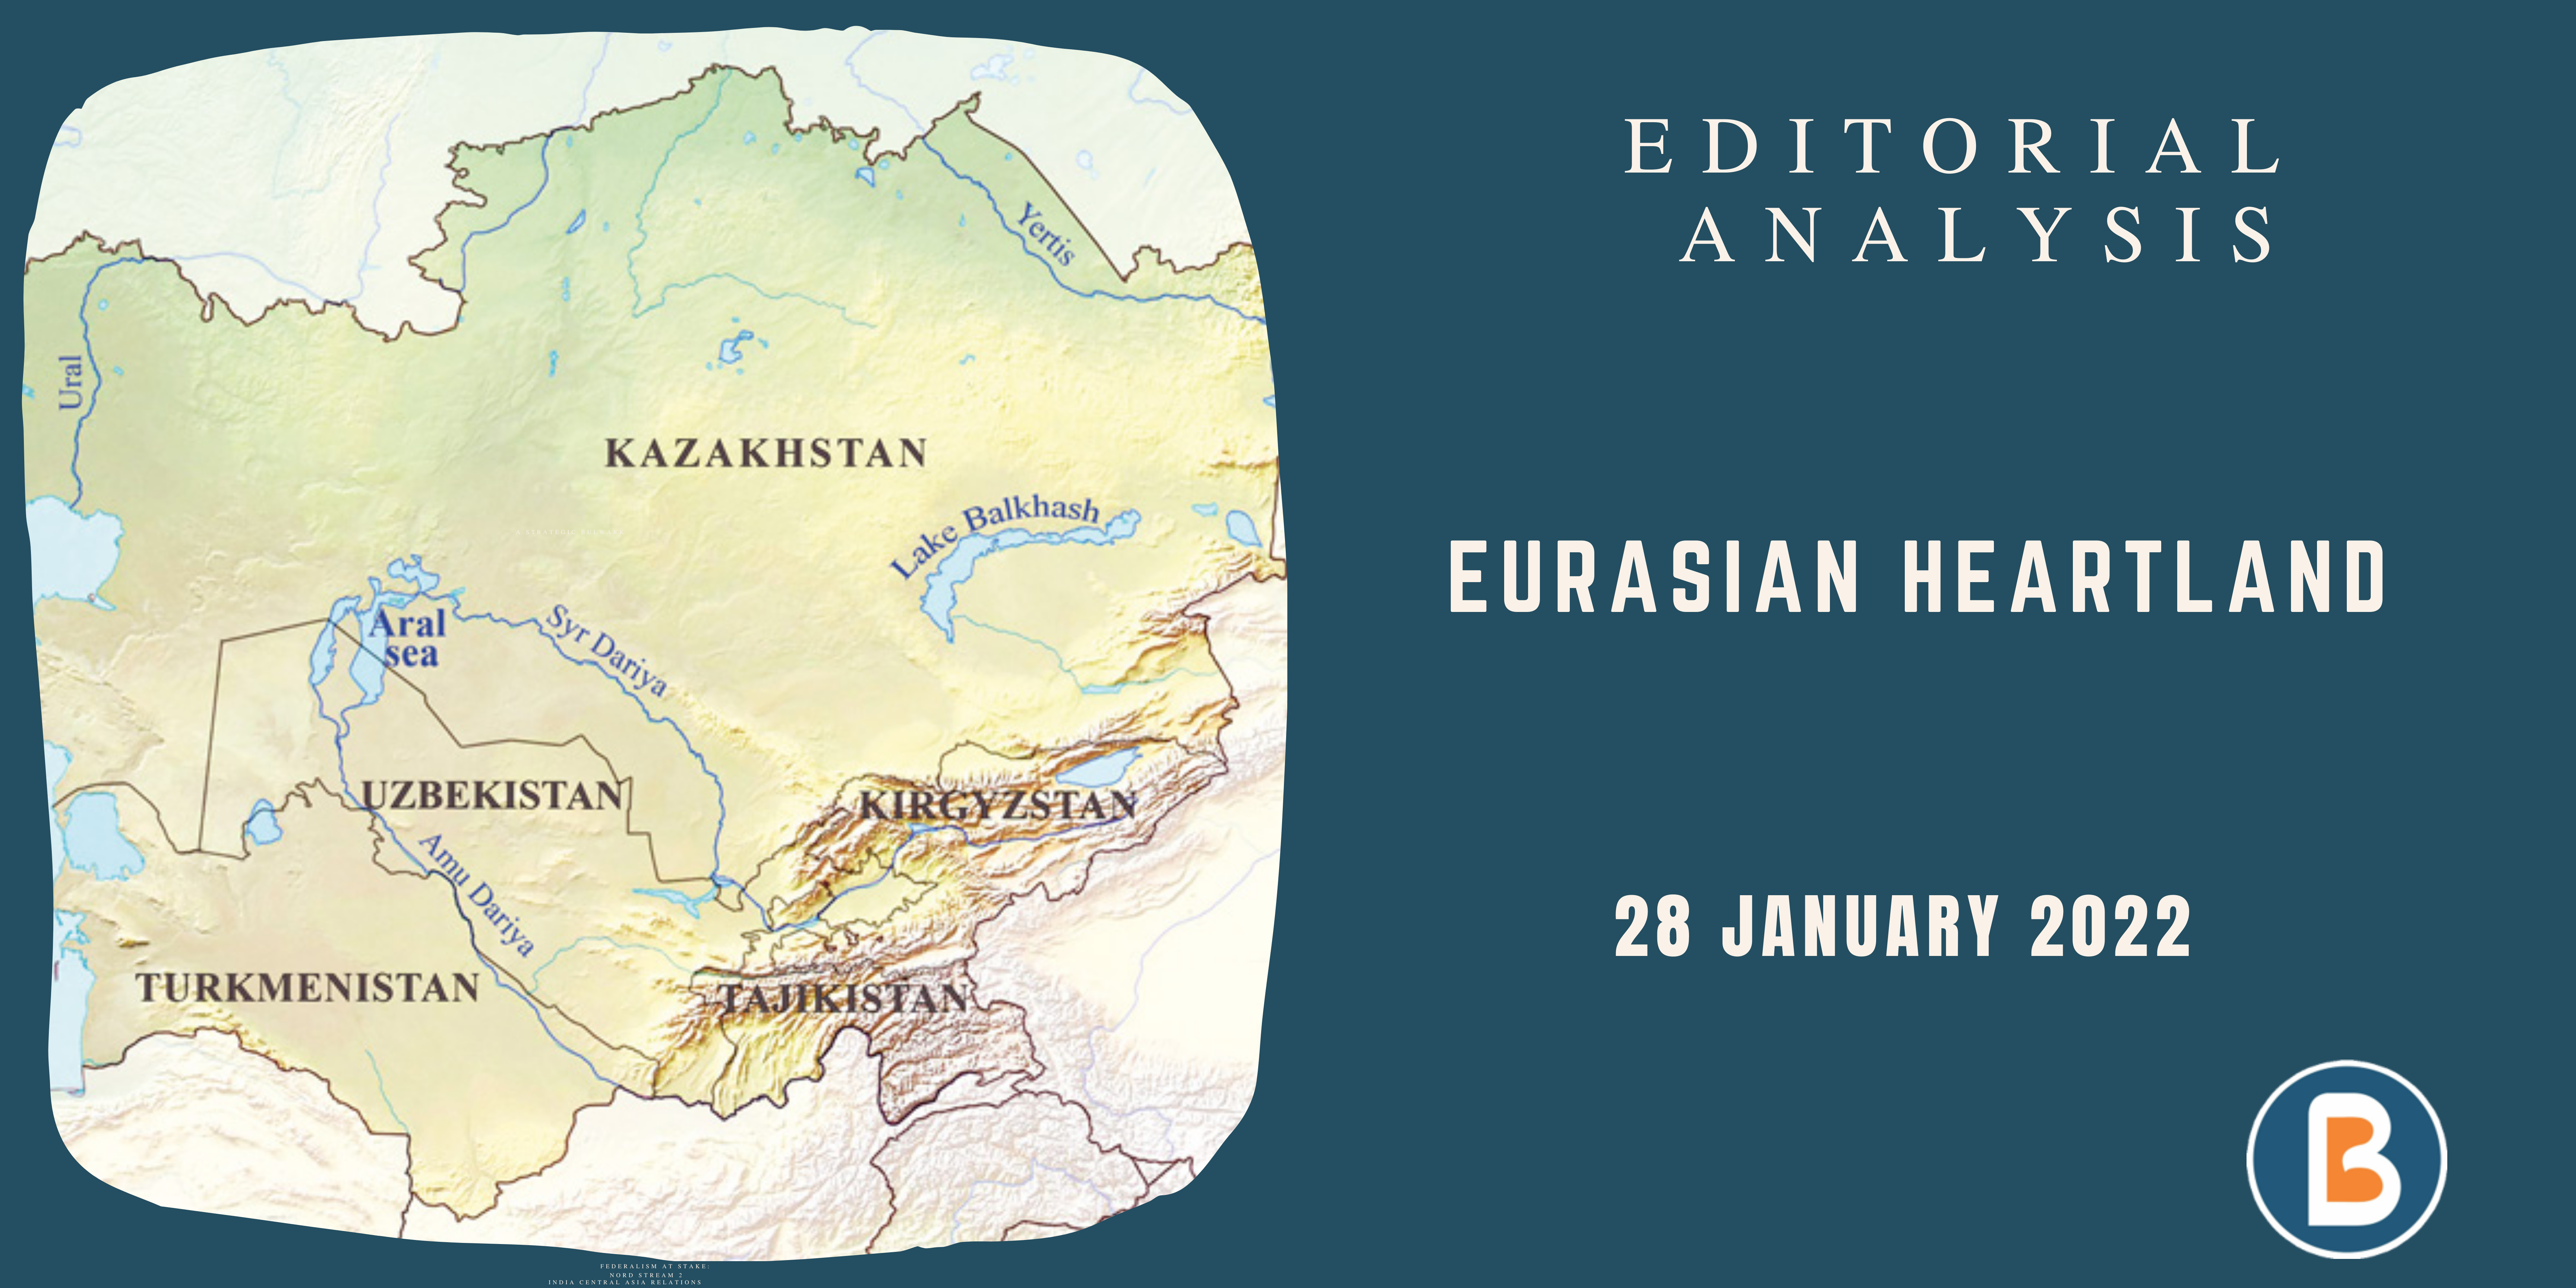 Editorial Analysis for UPSC - Eurasian Heartland